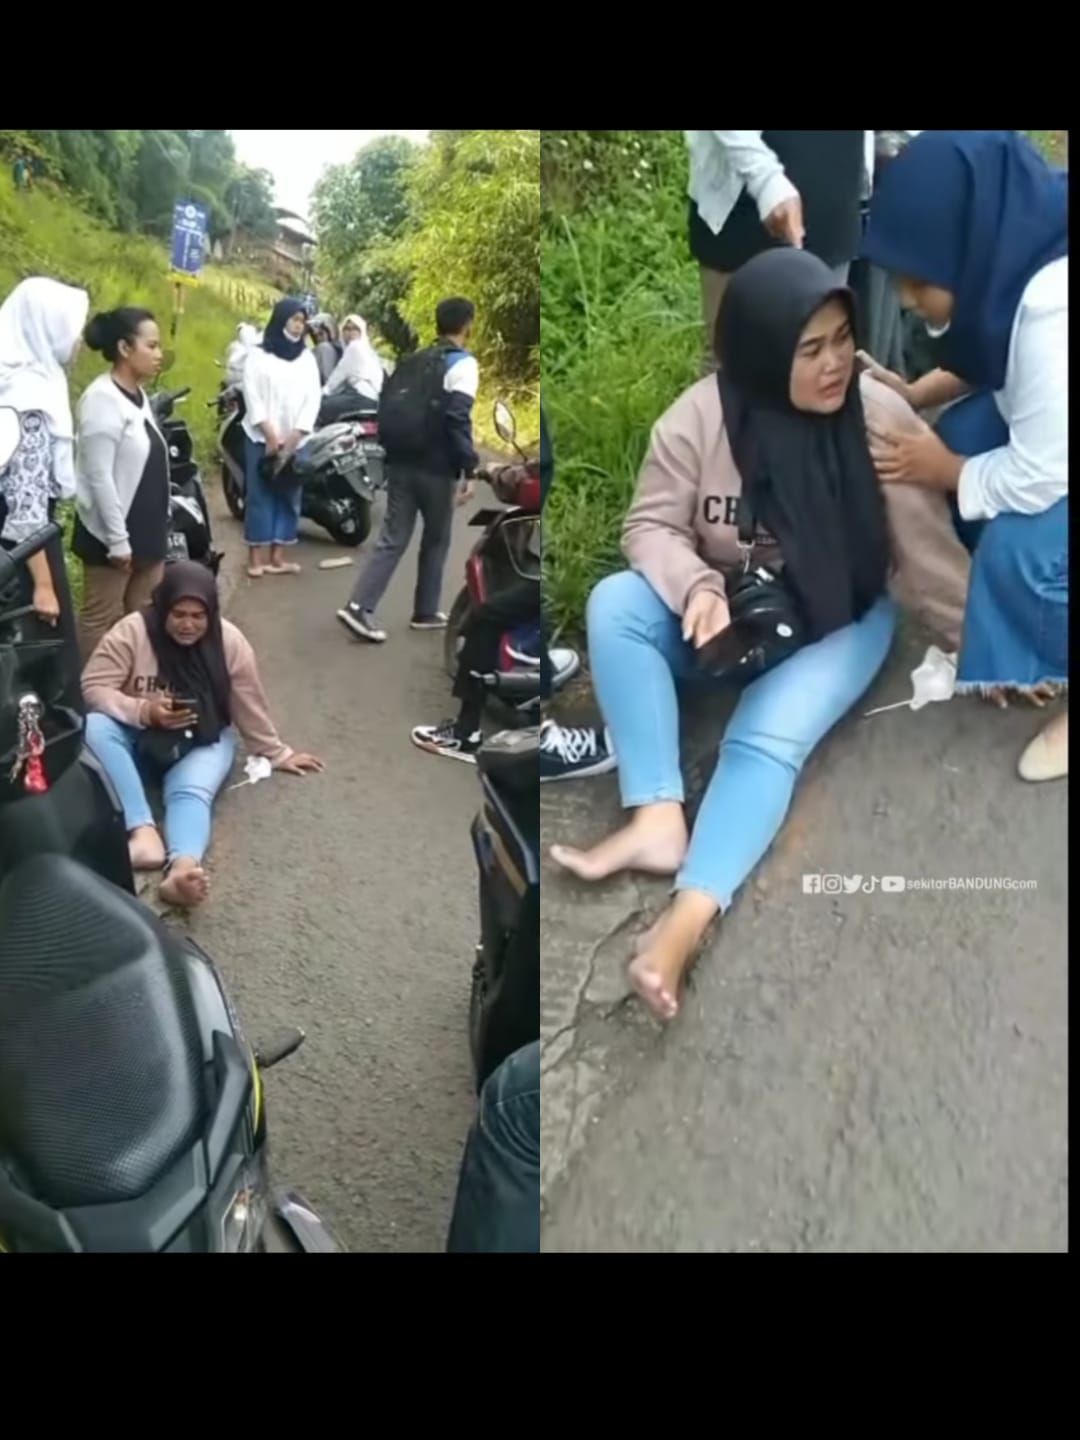 Ilustrasi, Viral di Medsos, Begal Motor Beraksi di Sore Hari di Cimenyan, Kabupaten Bandung 2 Perempuan Jadi Korban